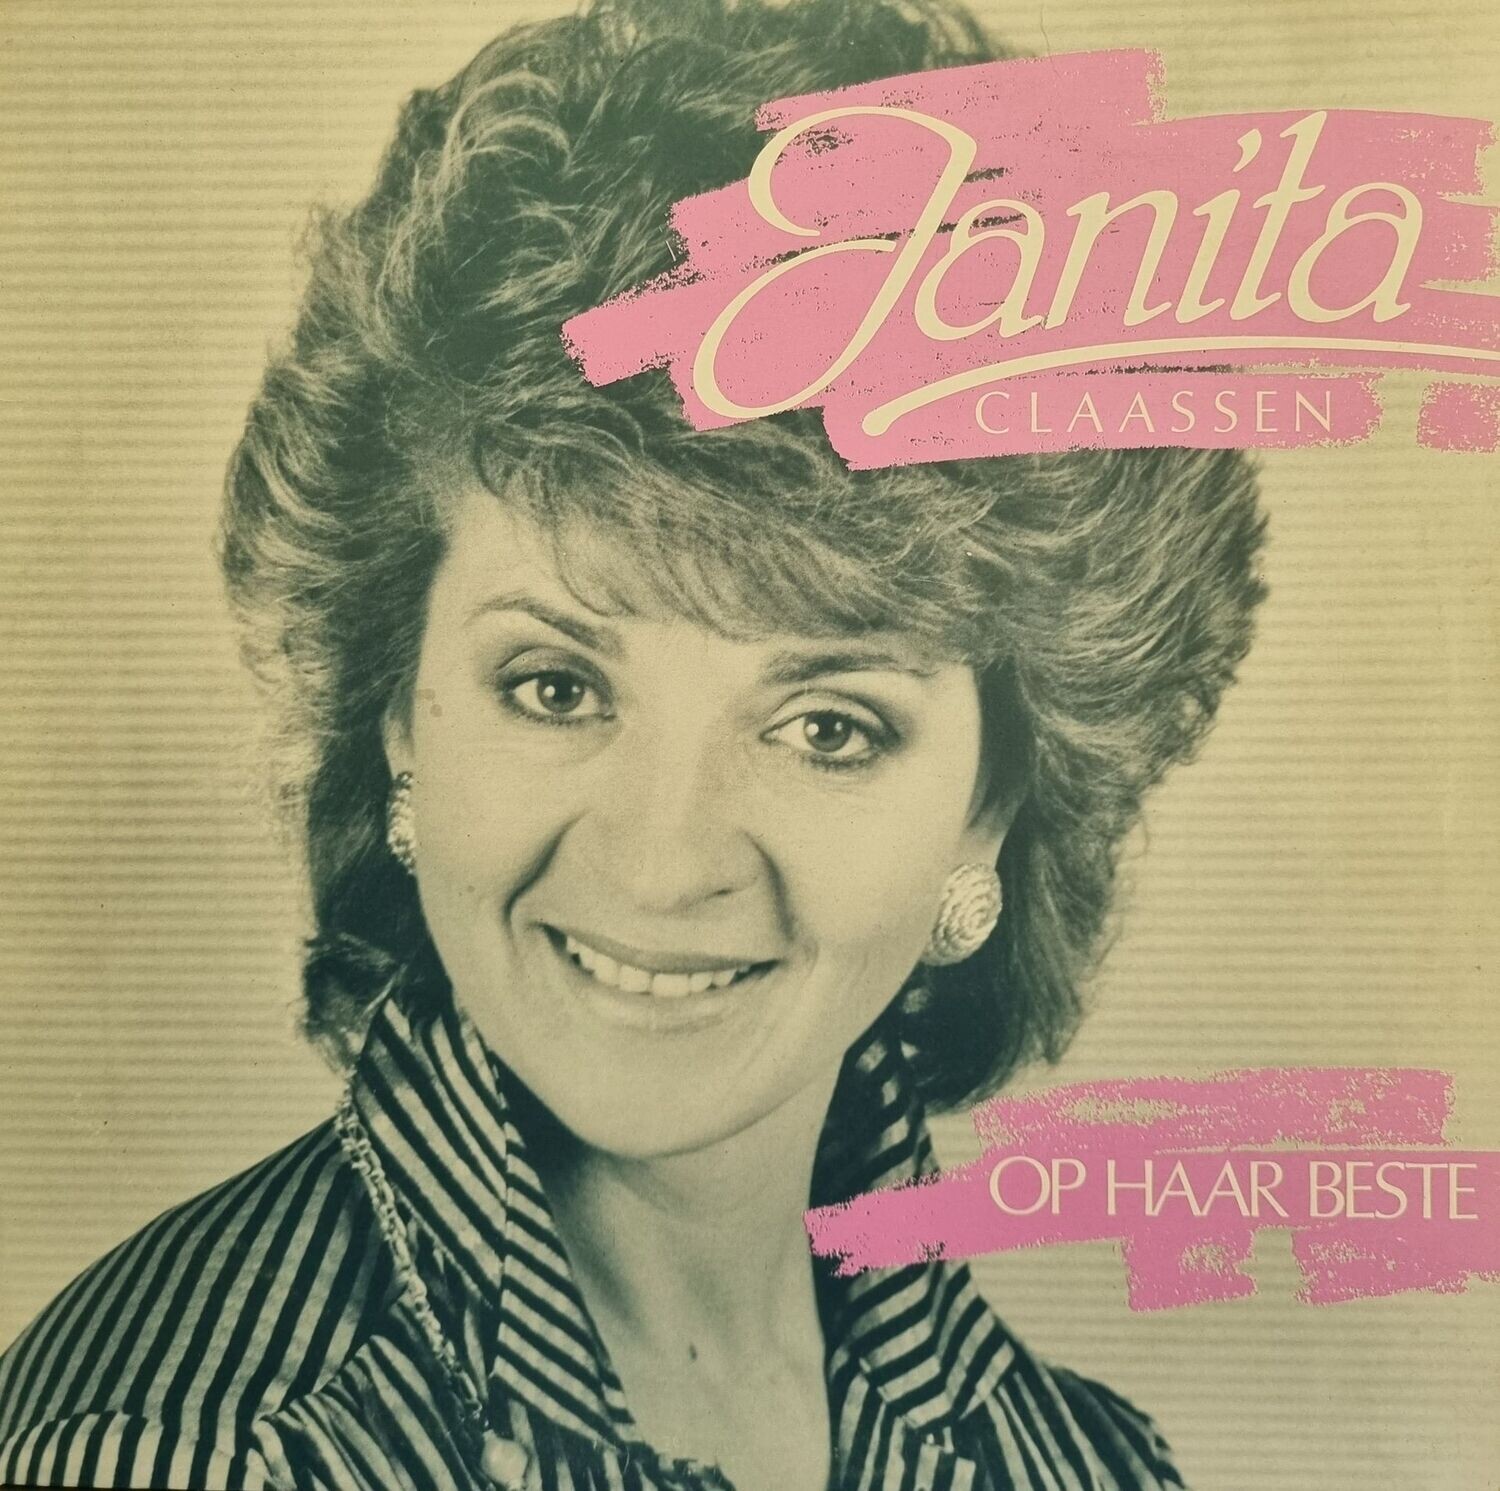 Janita Claassen – Op Haar Beste (1988)